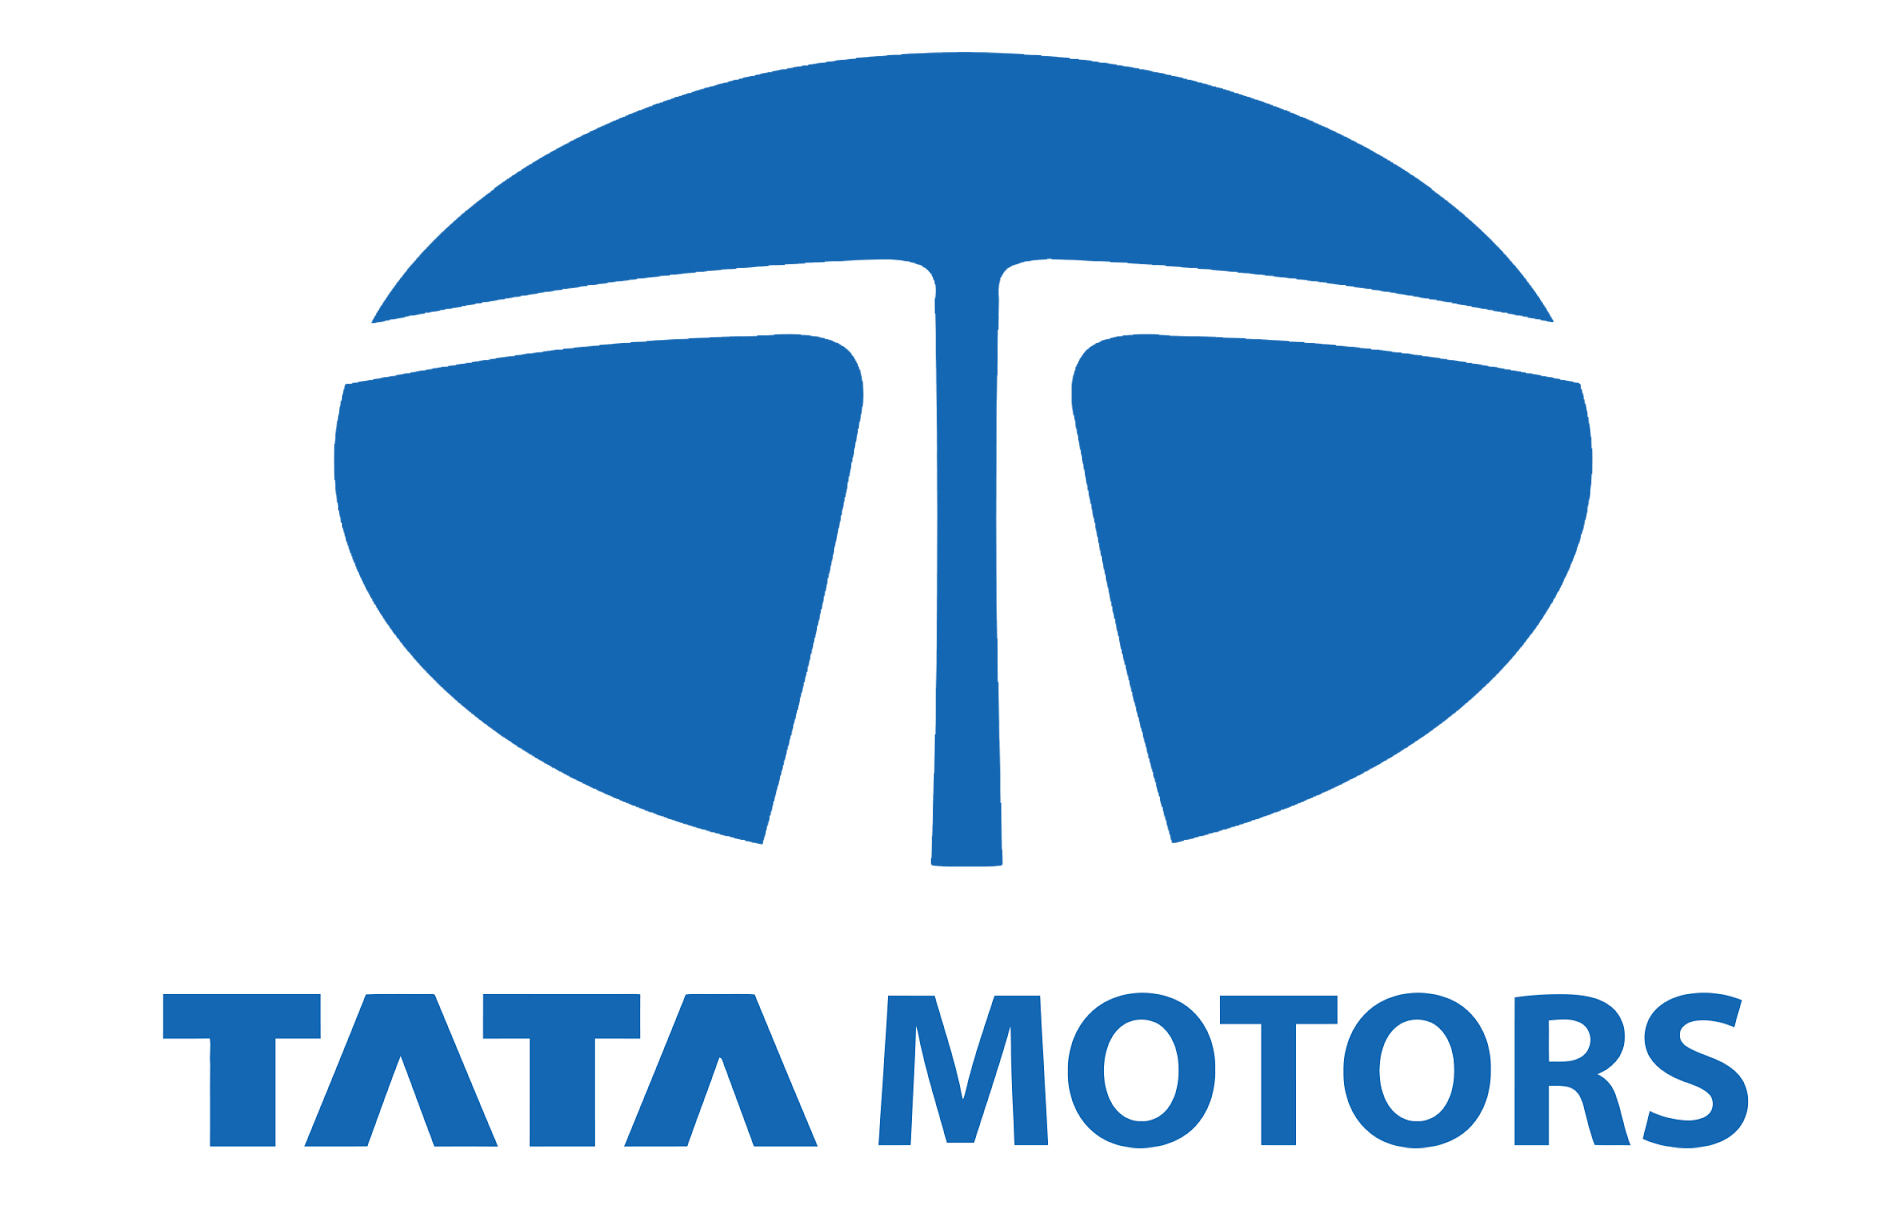 Tata Motors Cars Showroom - Fairdeal Motors|Show Room|Automotive